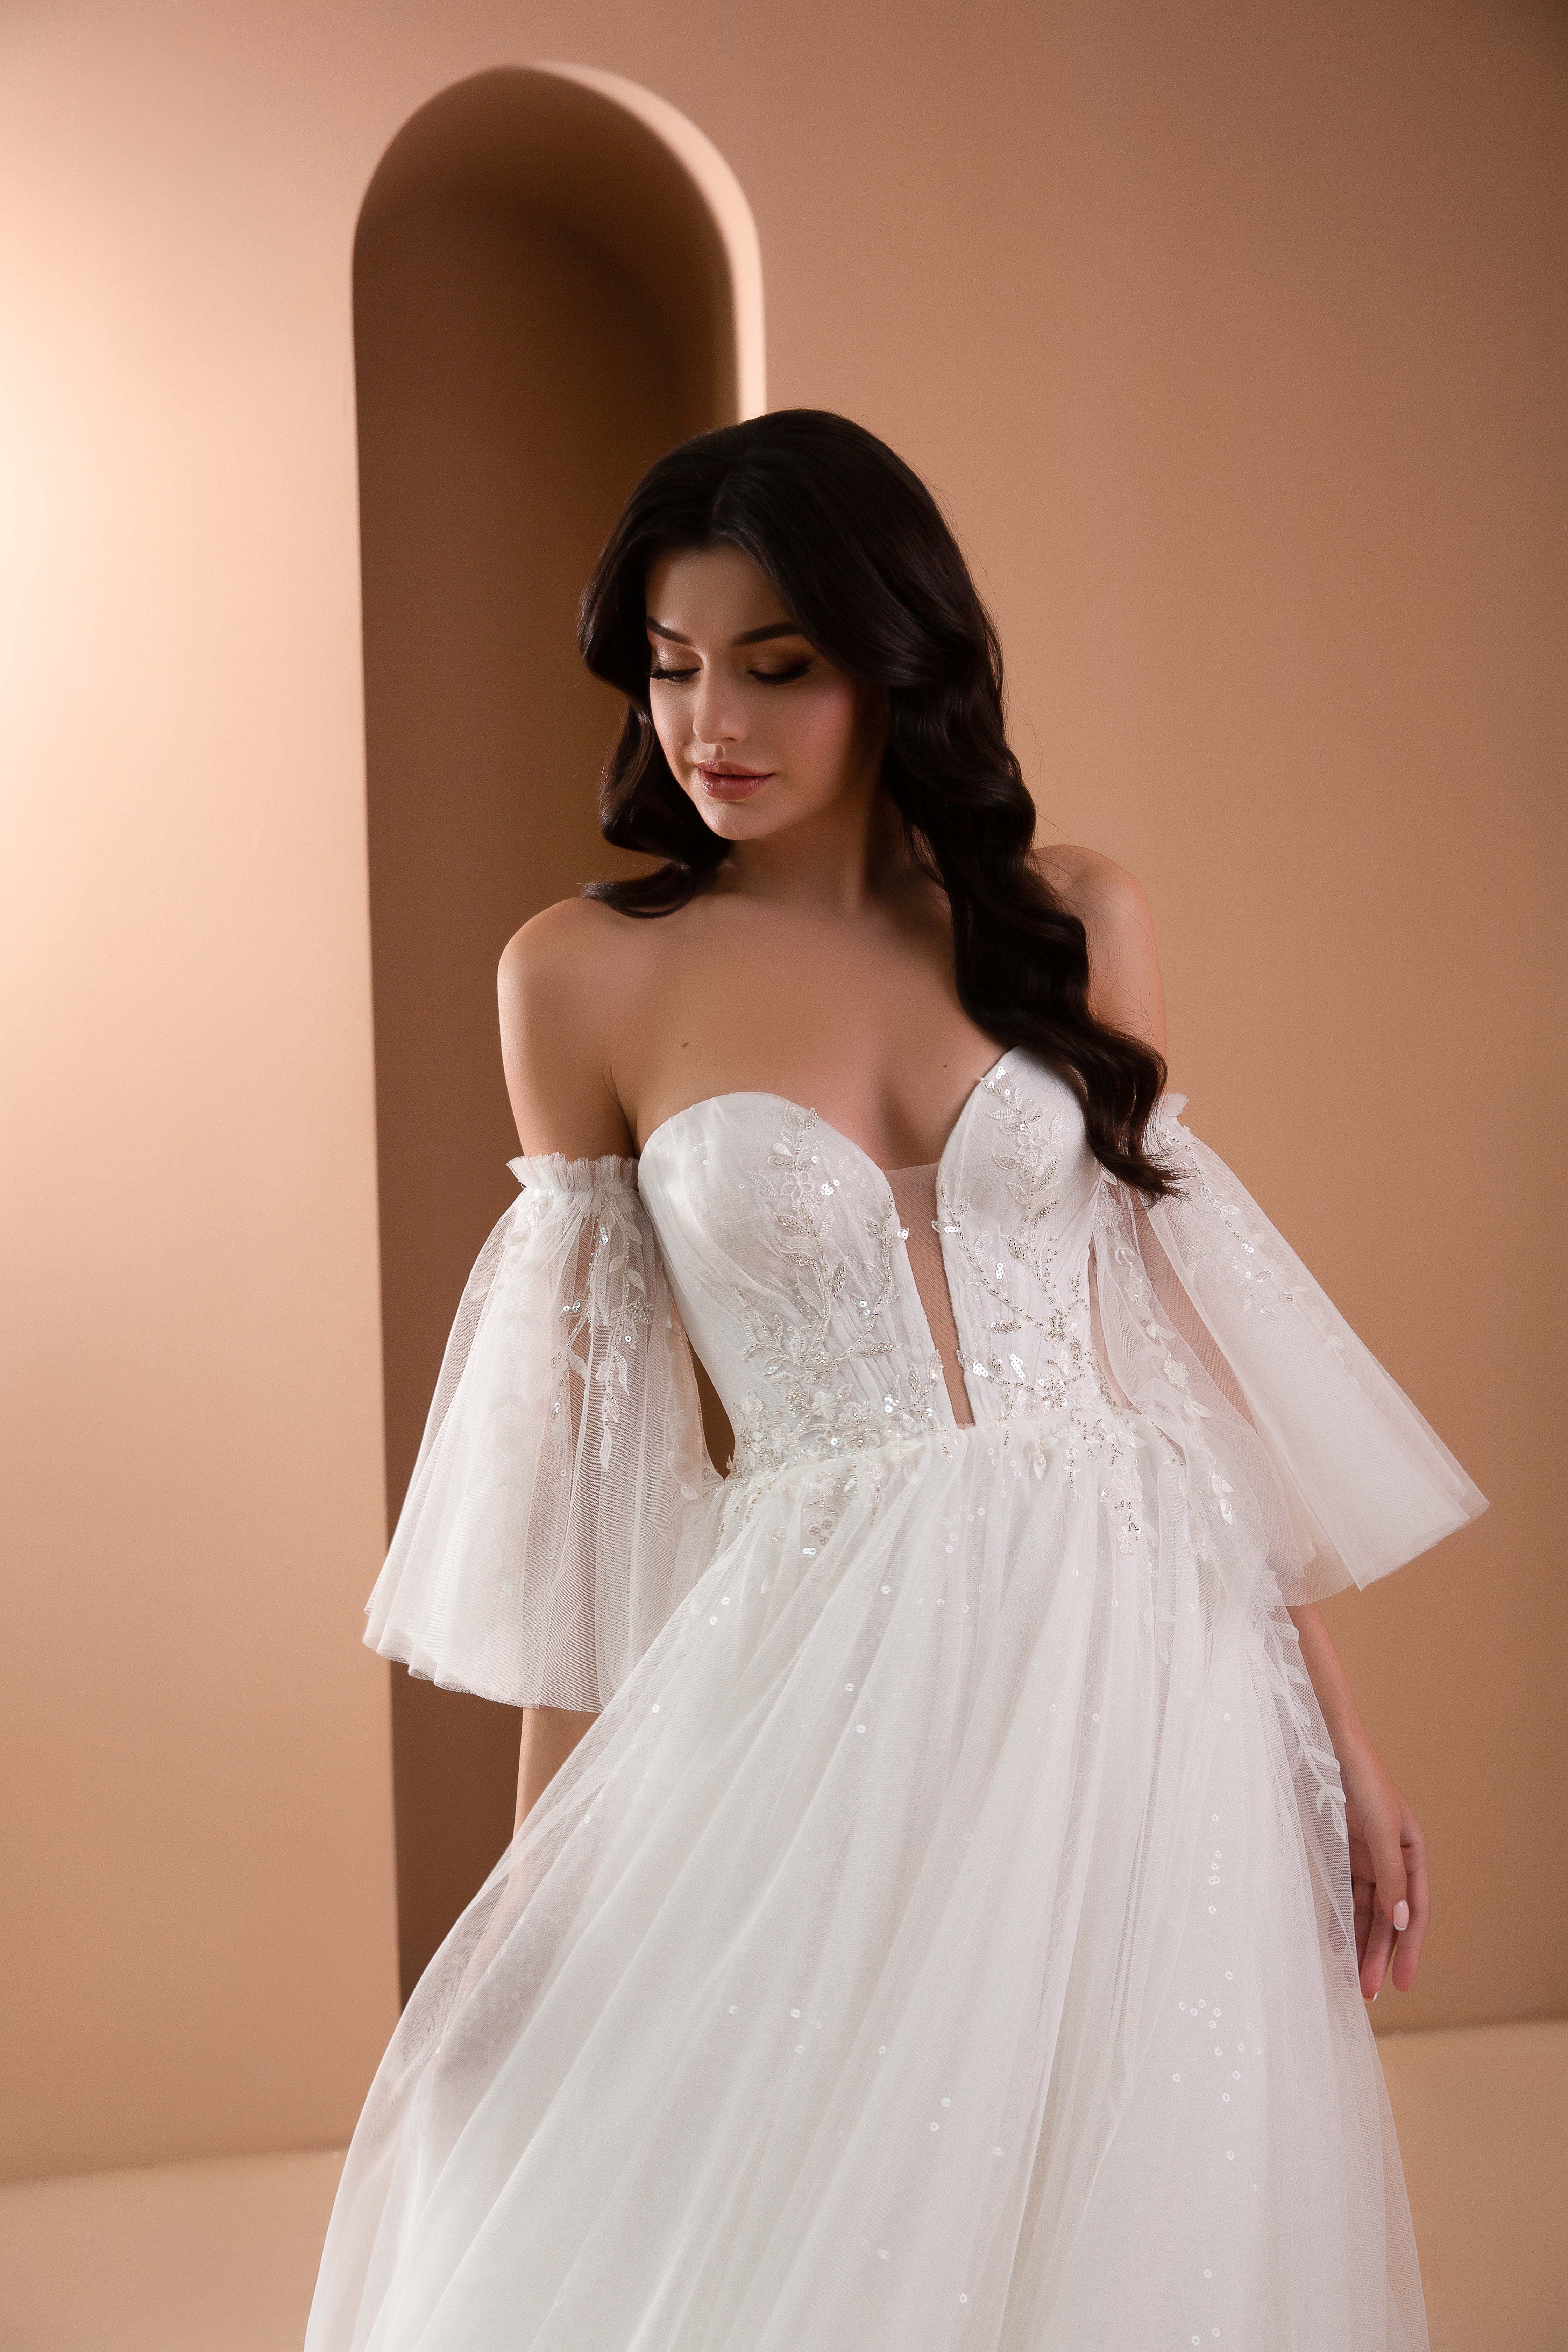 Купить свадебное платье Женивьева Армония из коллекции 2021 года в салоне «Мэри Трюфель»